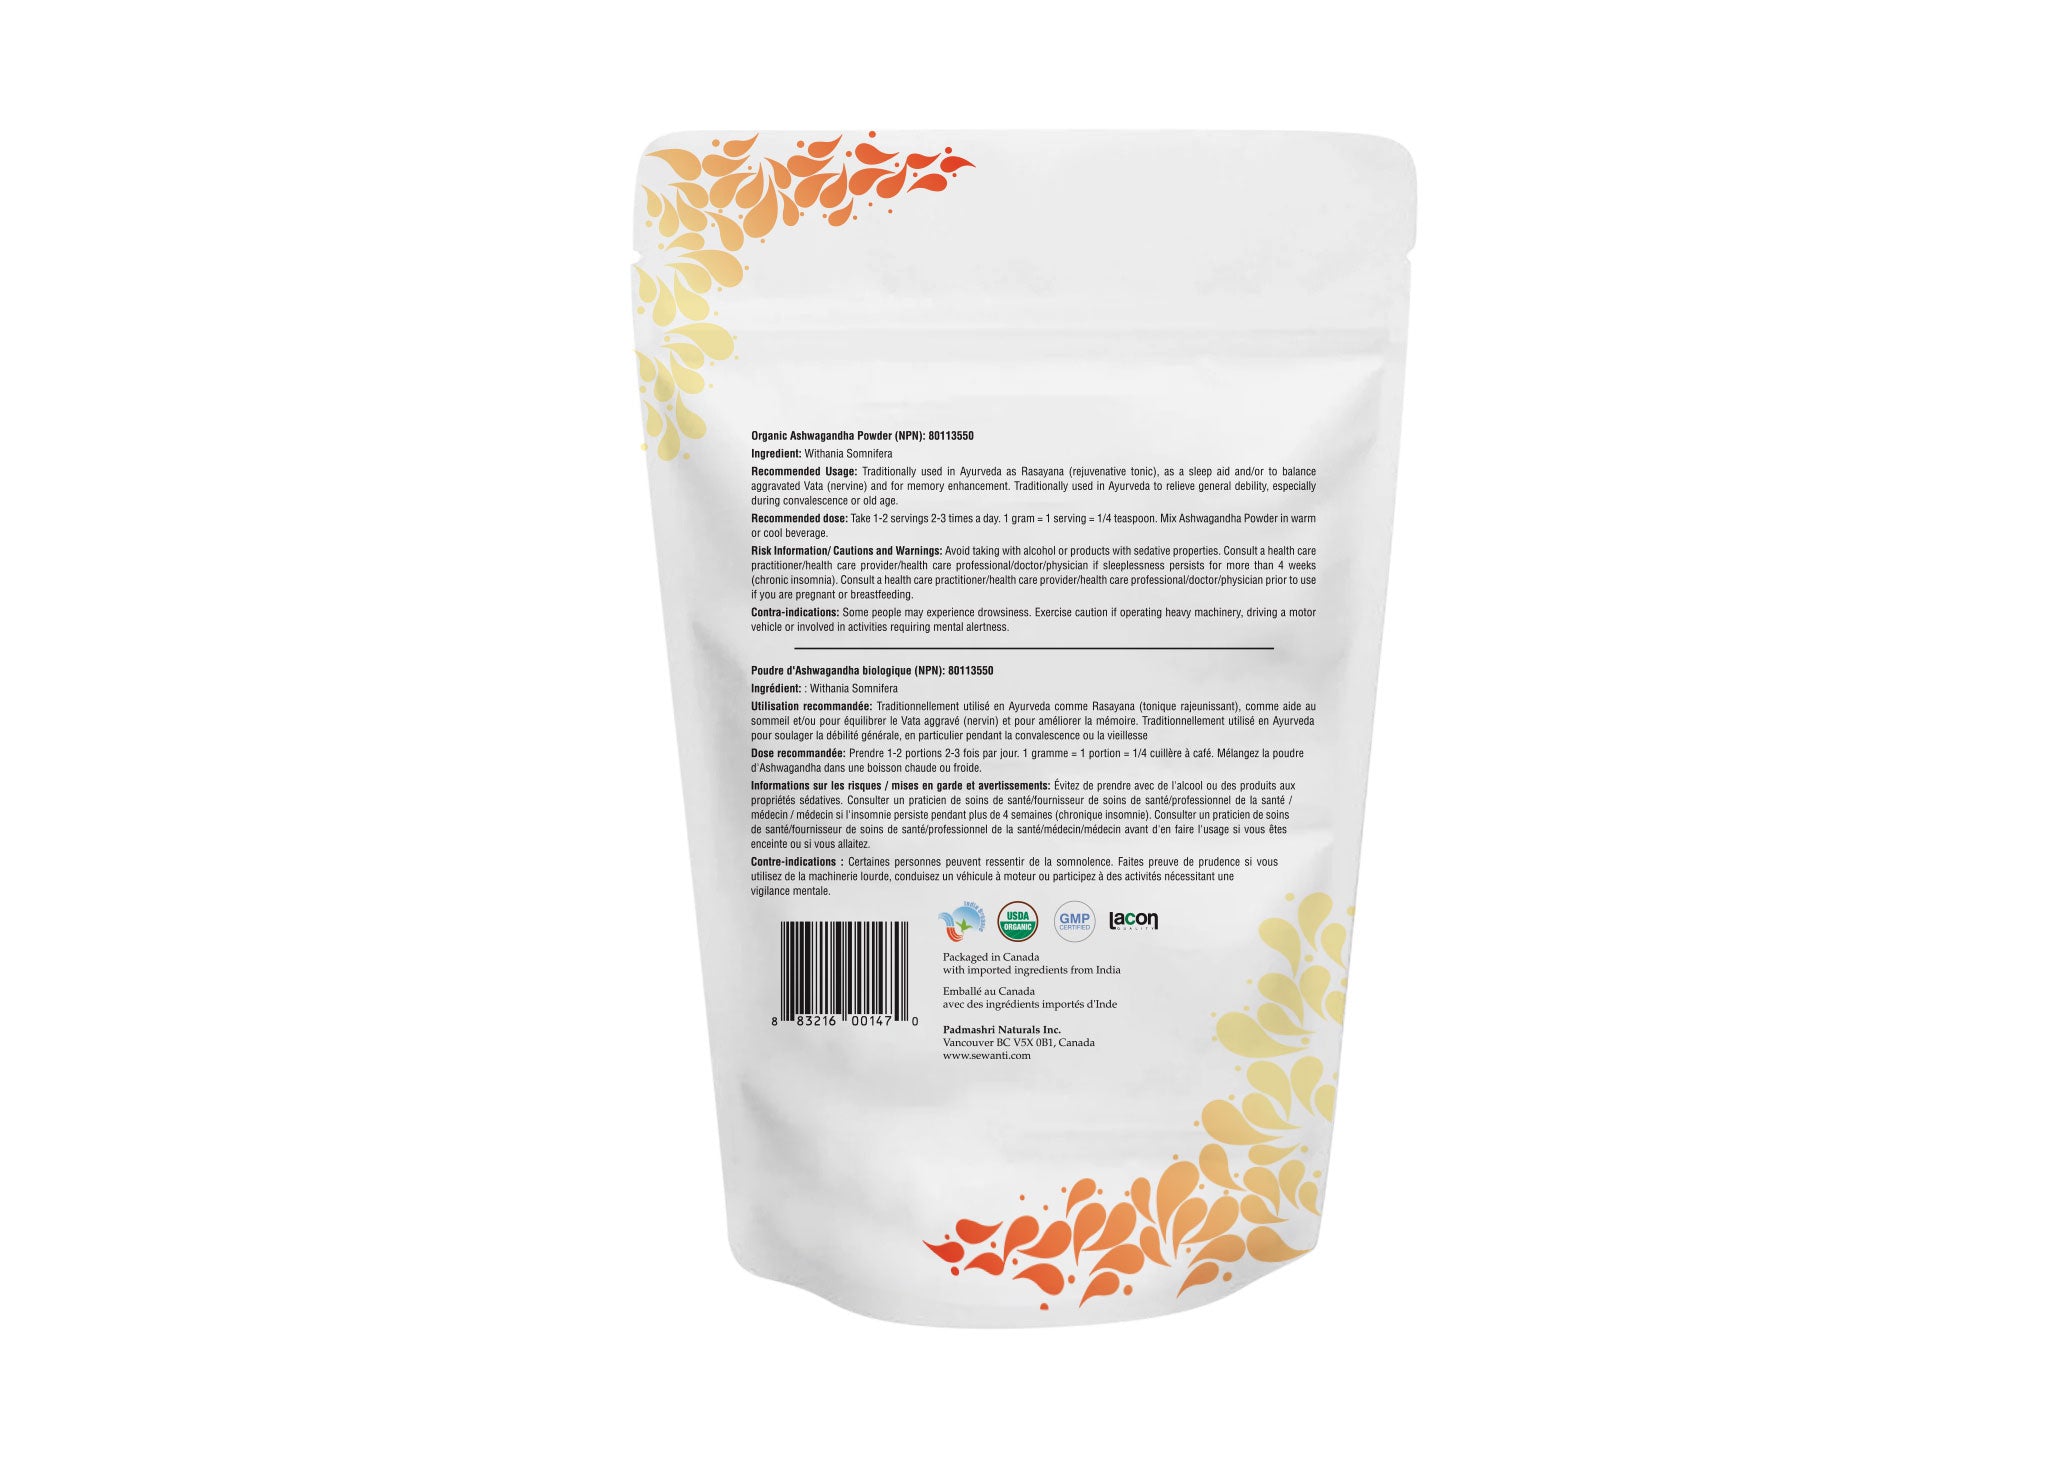 Organic Ashwagandha Root Powder - Withania Somnifera